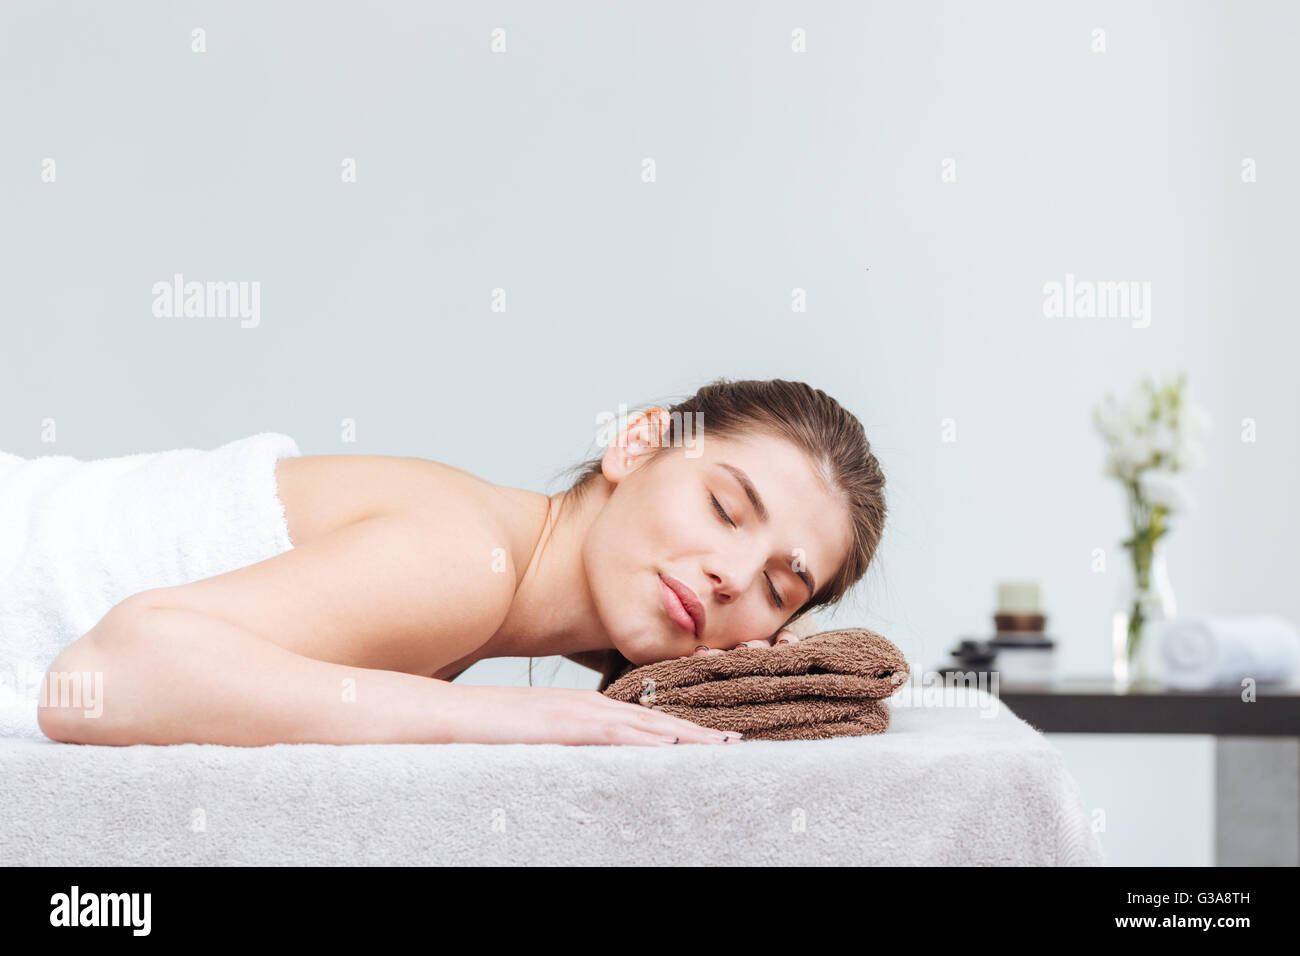 Oferta joven tumbado en la toalla con los ojos cerrados durante el tratamiento para el cuidado de la piel en el salón spa Foto de stock